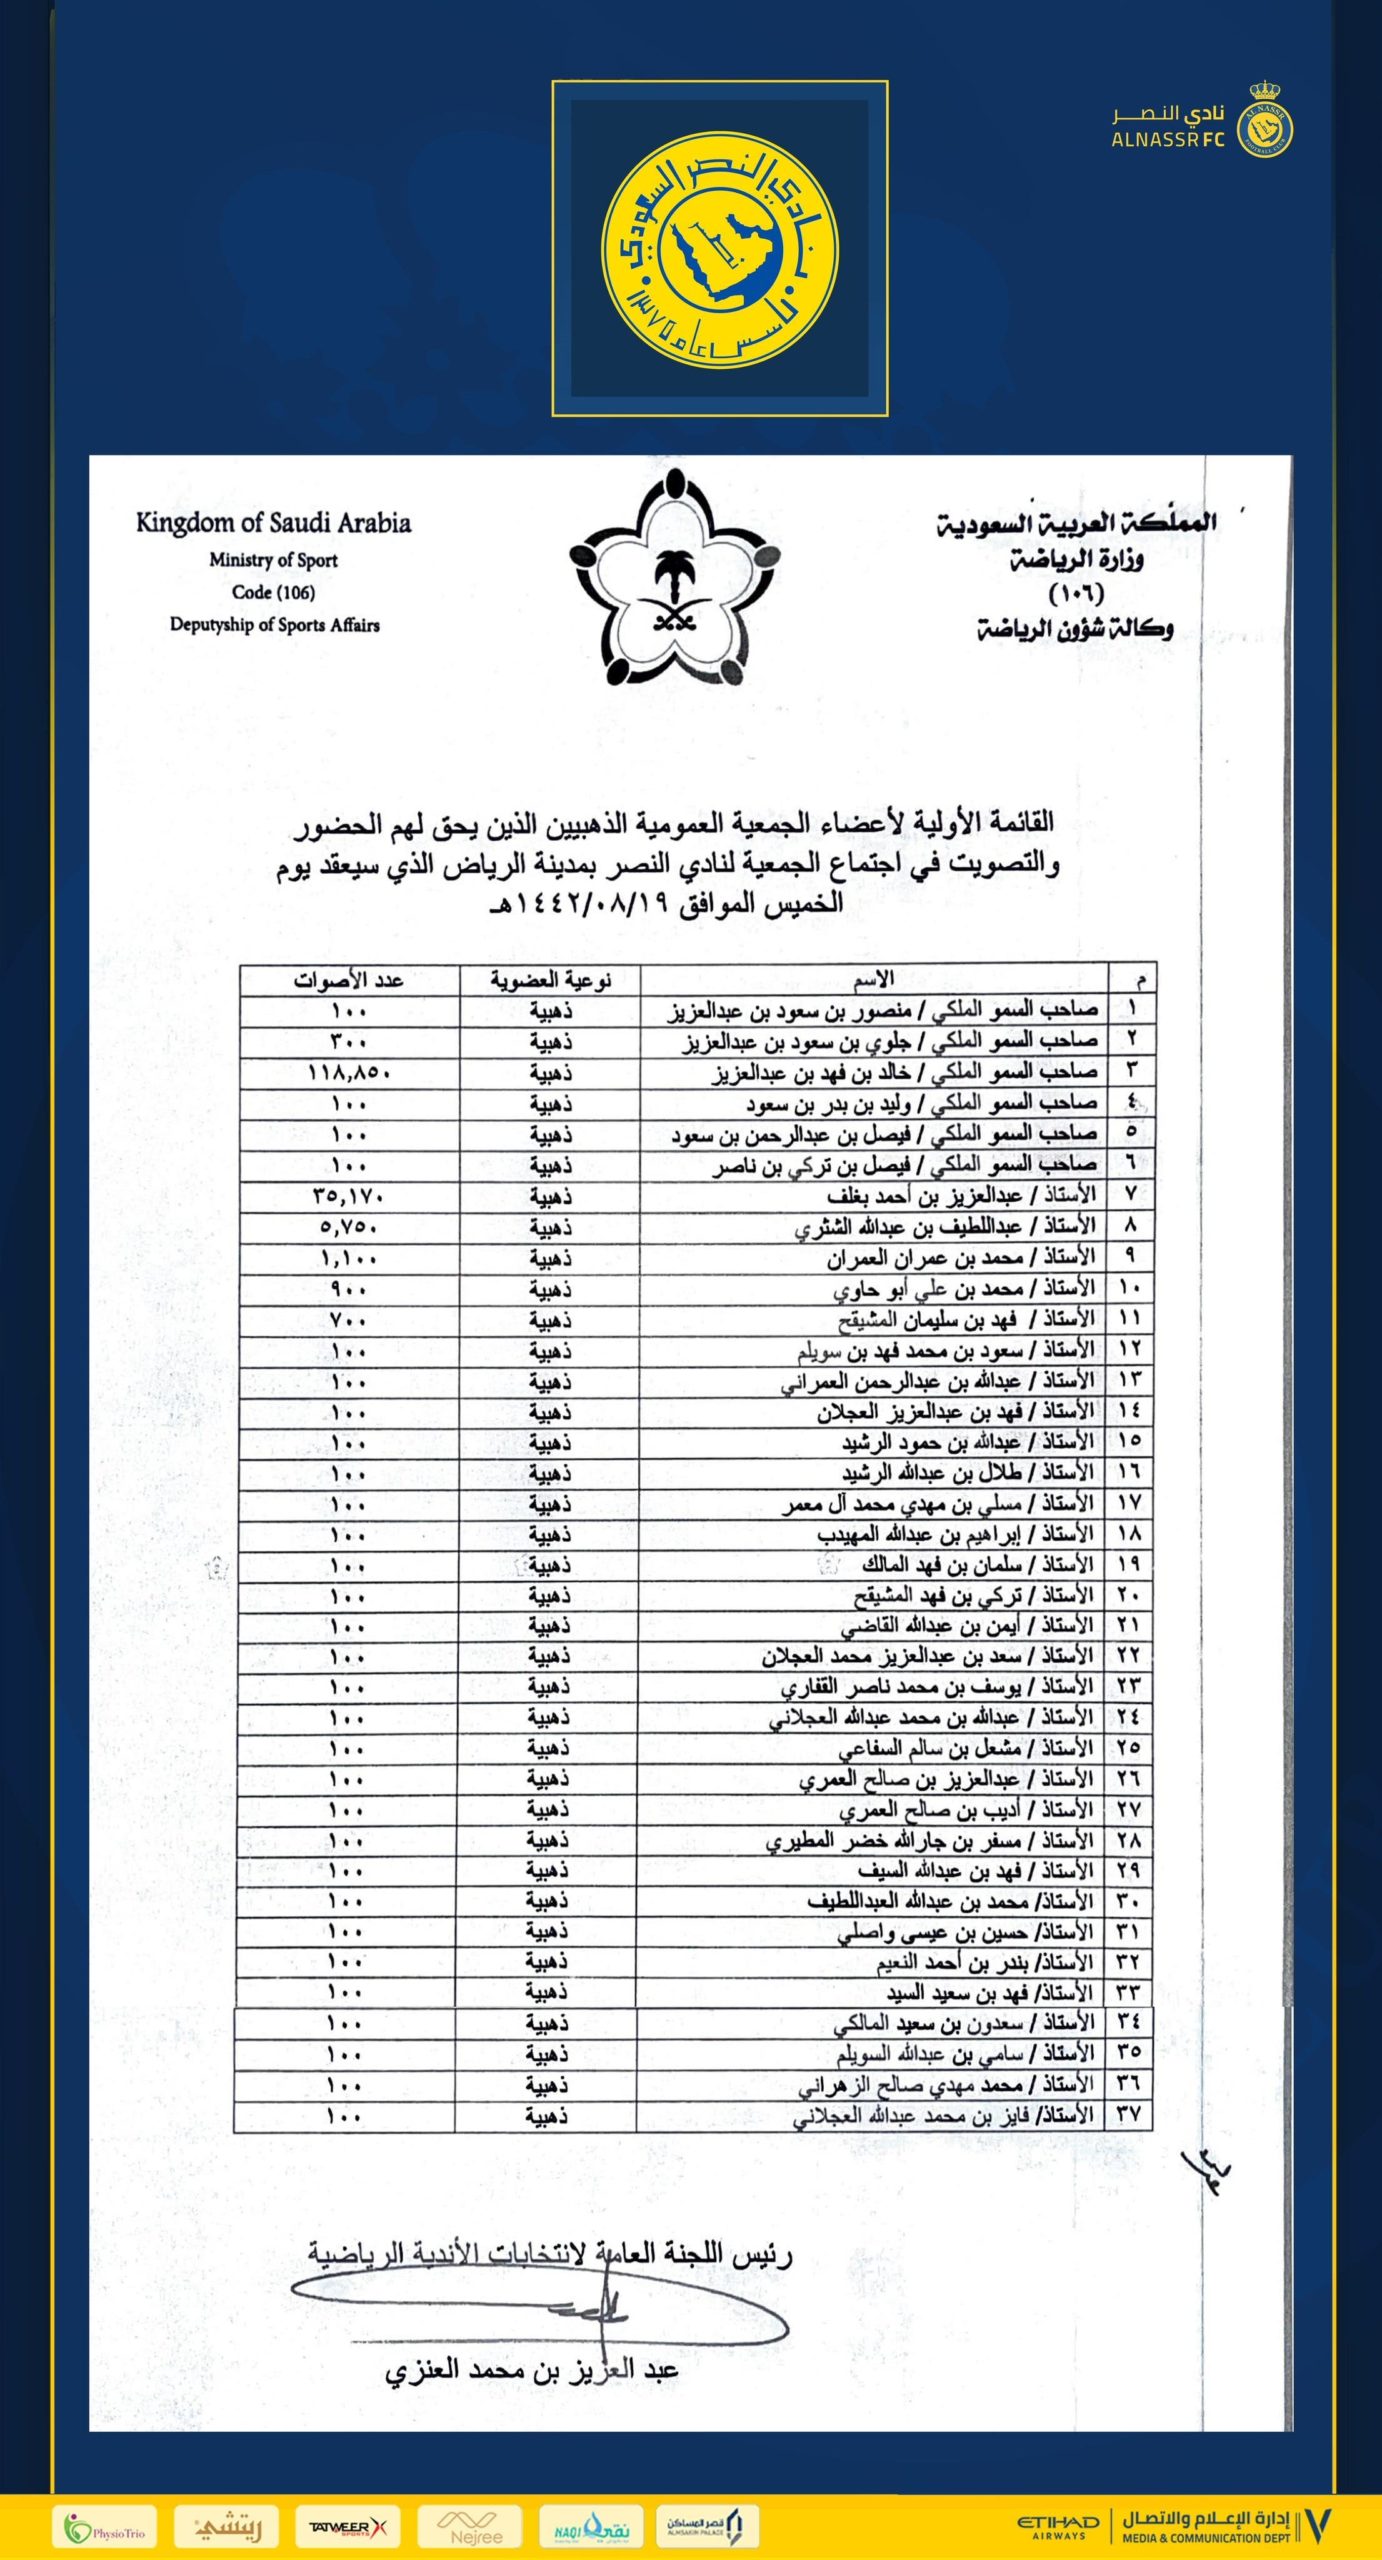 أكثر من 118 ألف صوت لخالد بن فهد في جمعية النصر العمومية